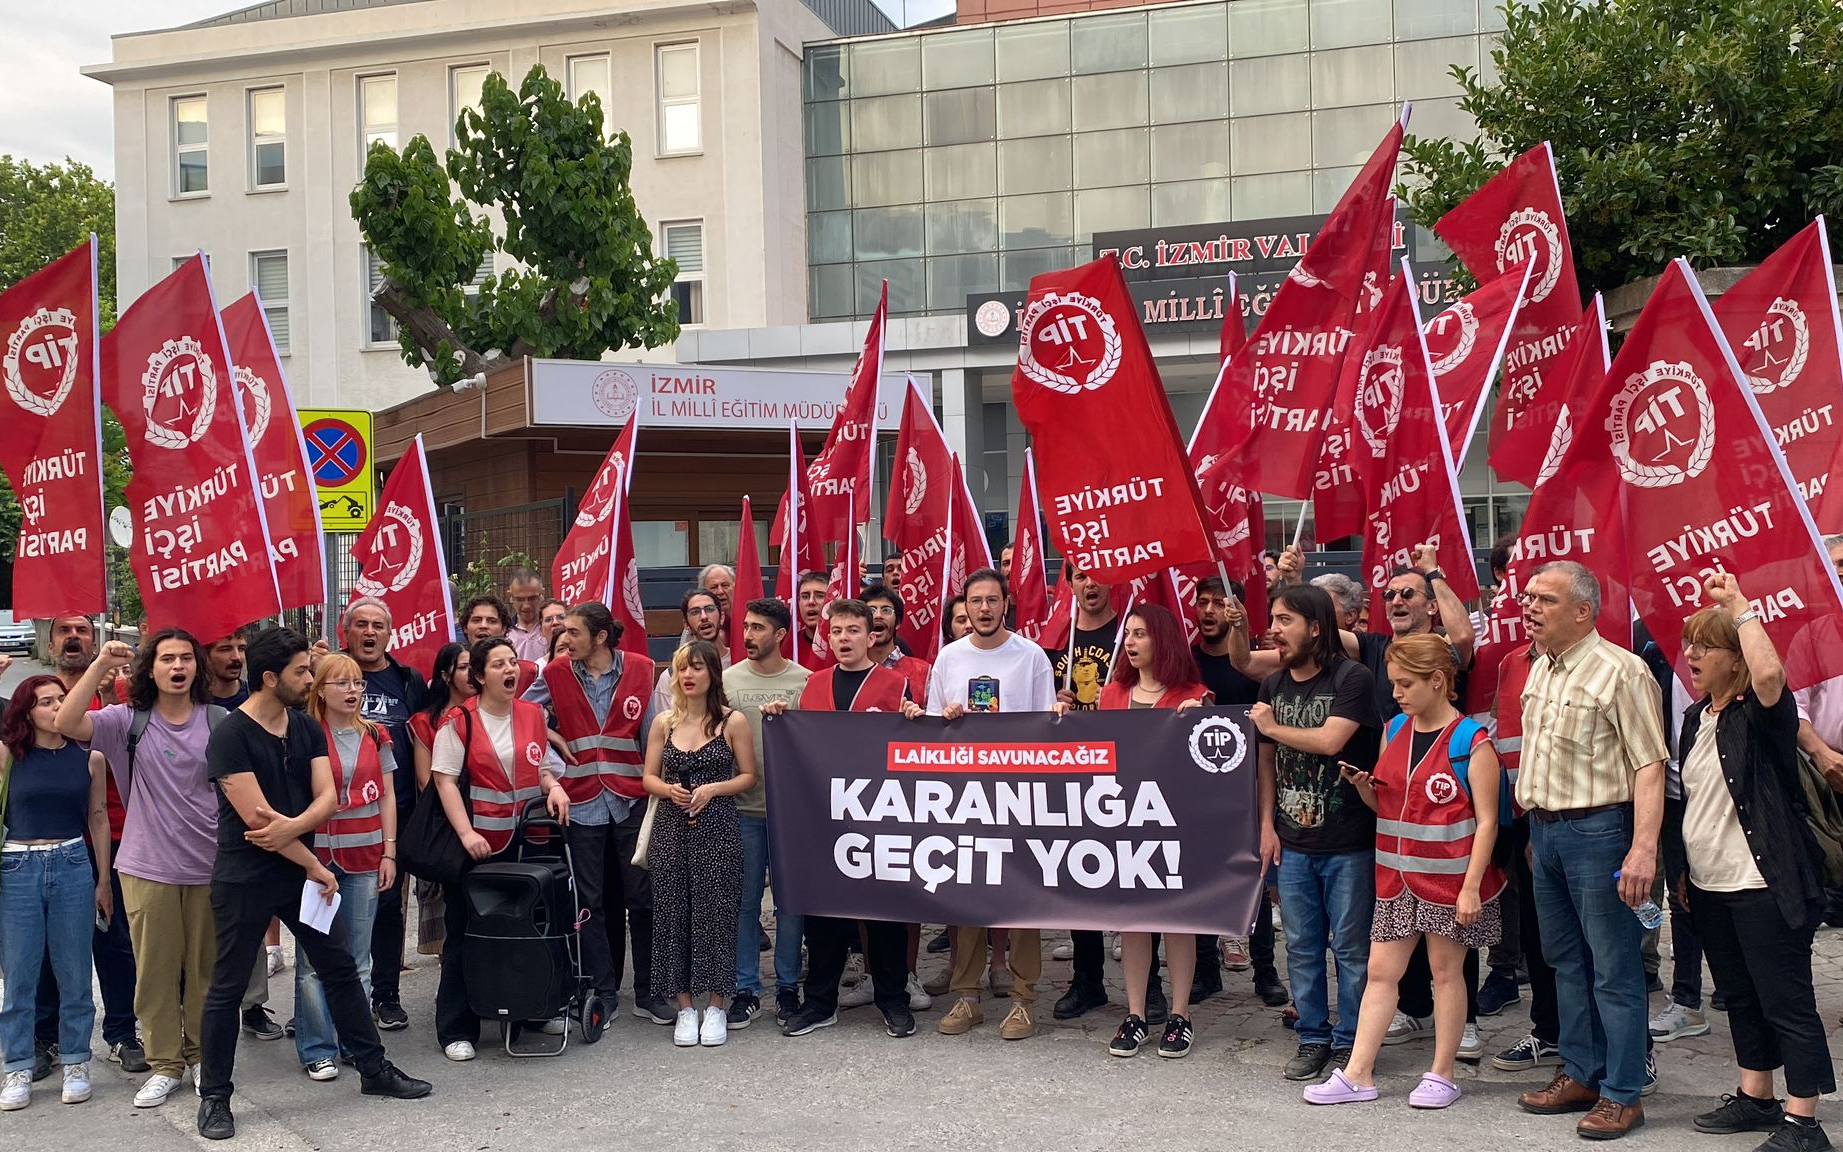 TİP'ten İzmir'de 'ÇEDES' protestosu: 'Milli Eğitim Müdürü hesap versin'